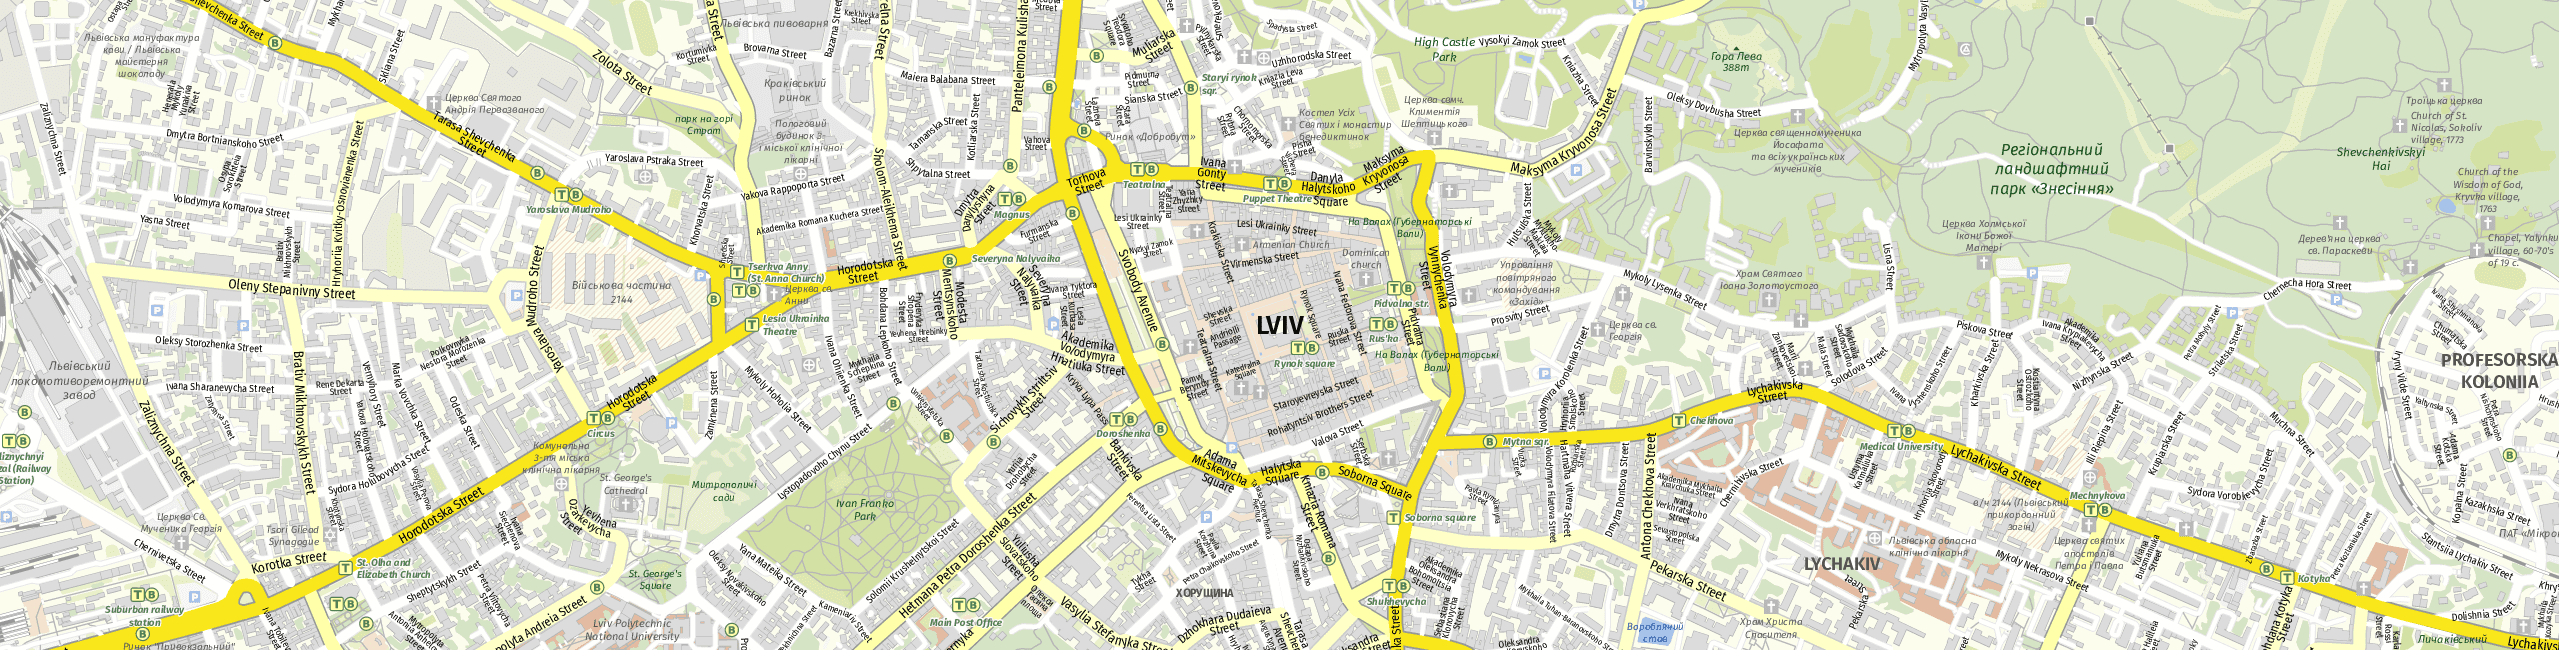 Stadtplan Lviv zum Downloaden.